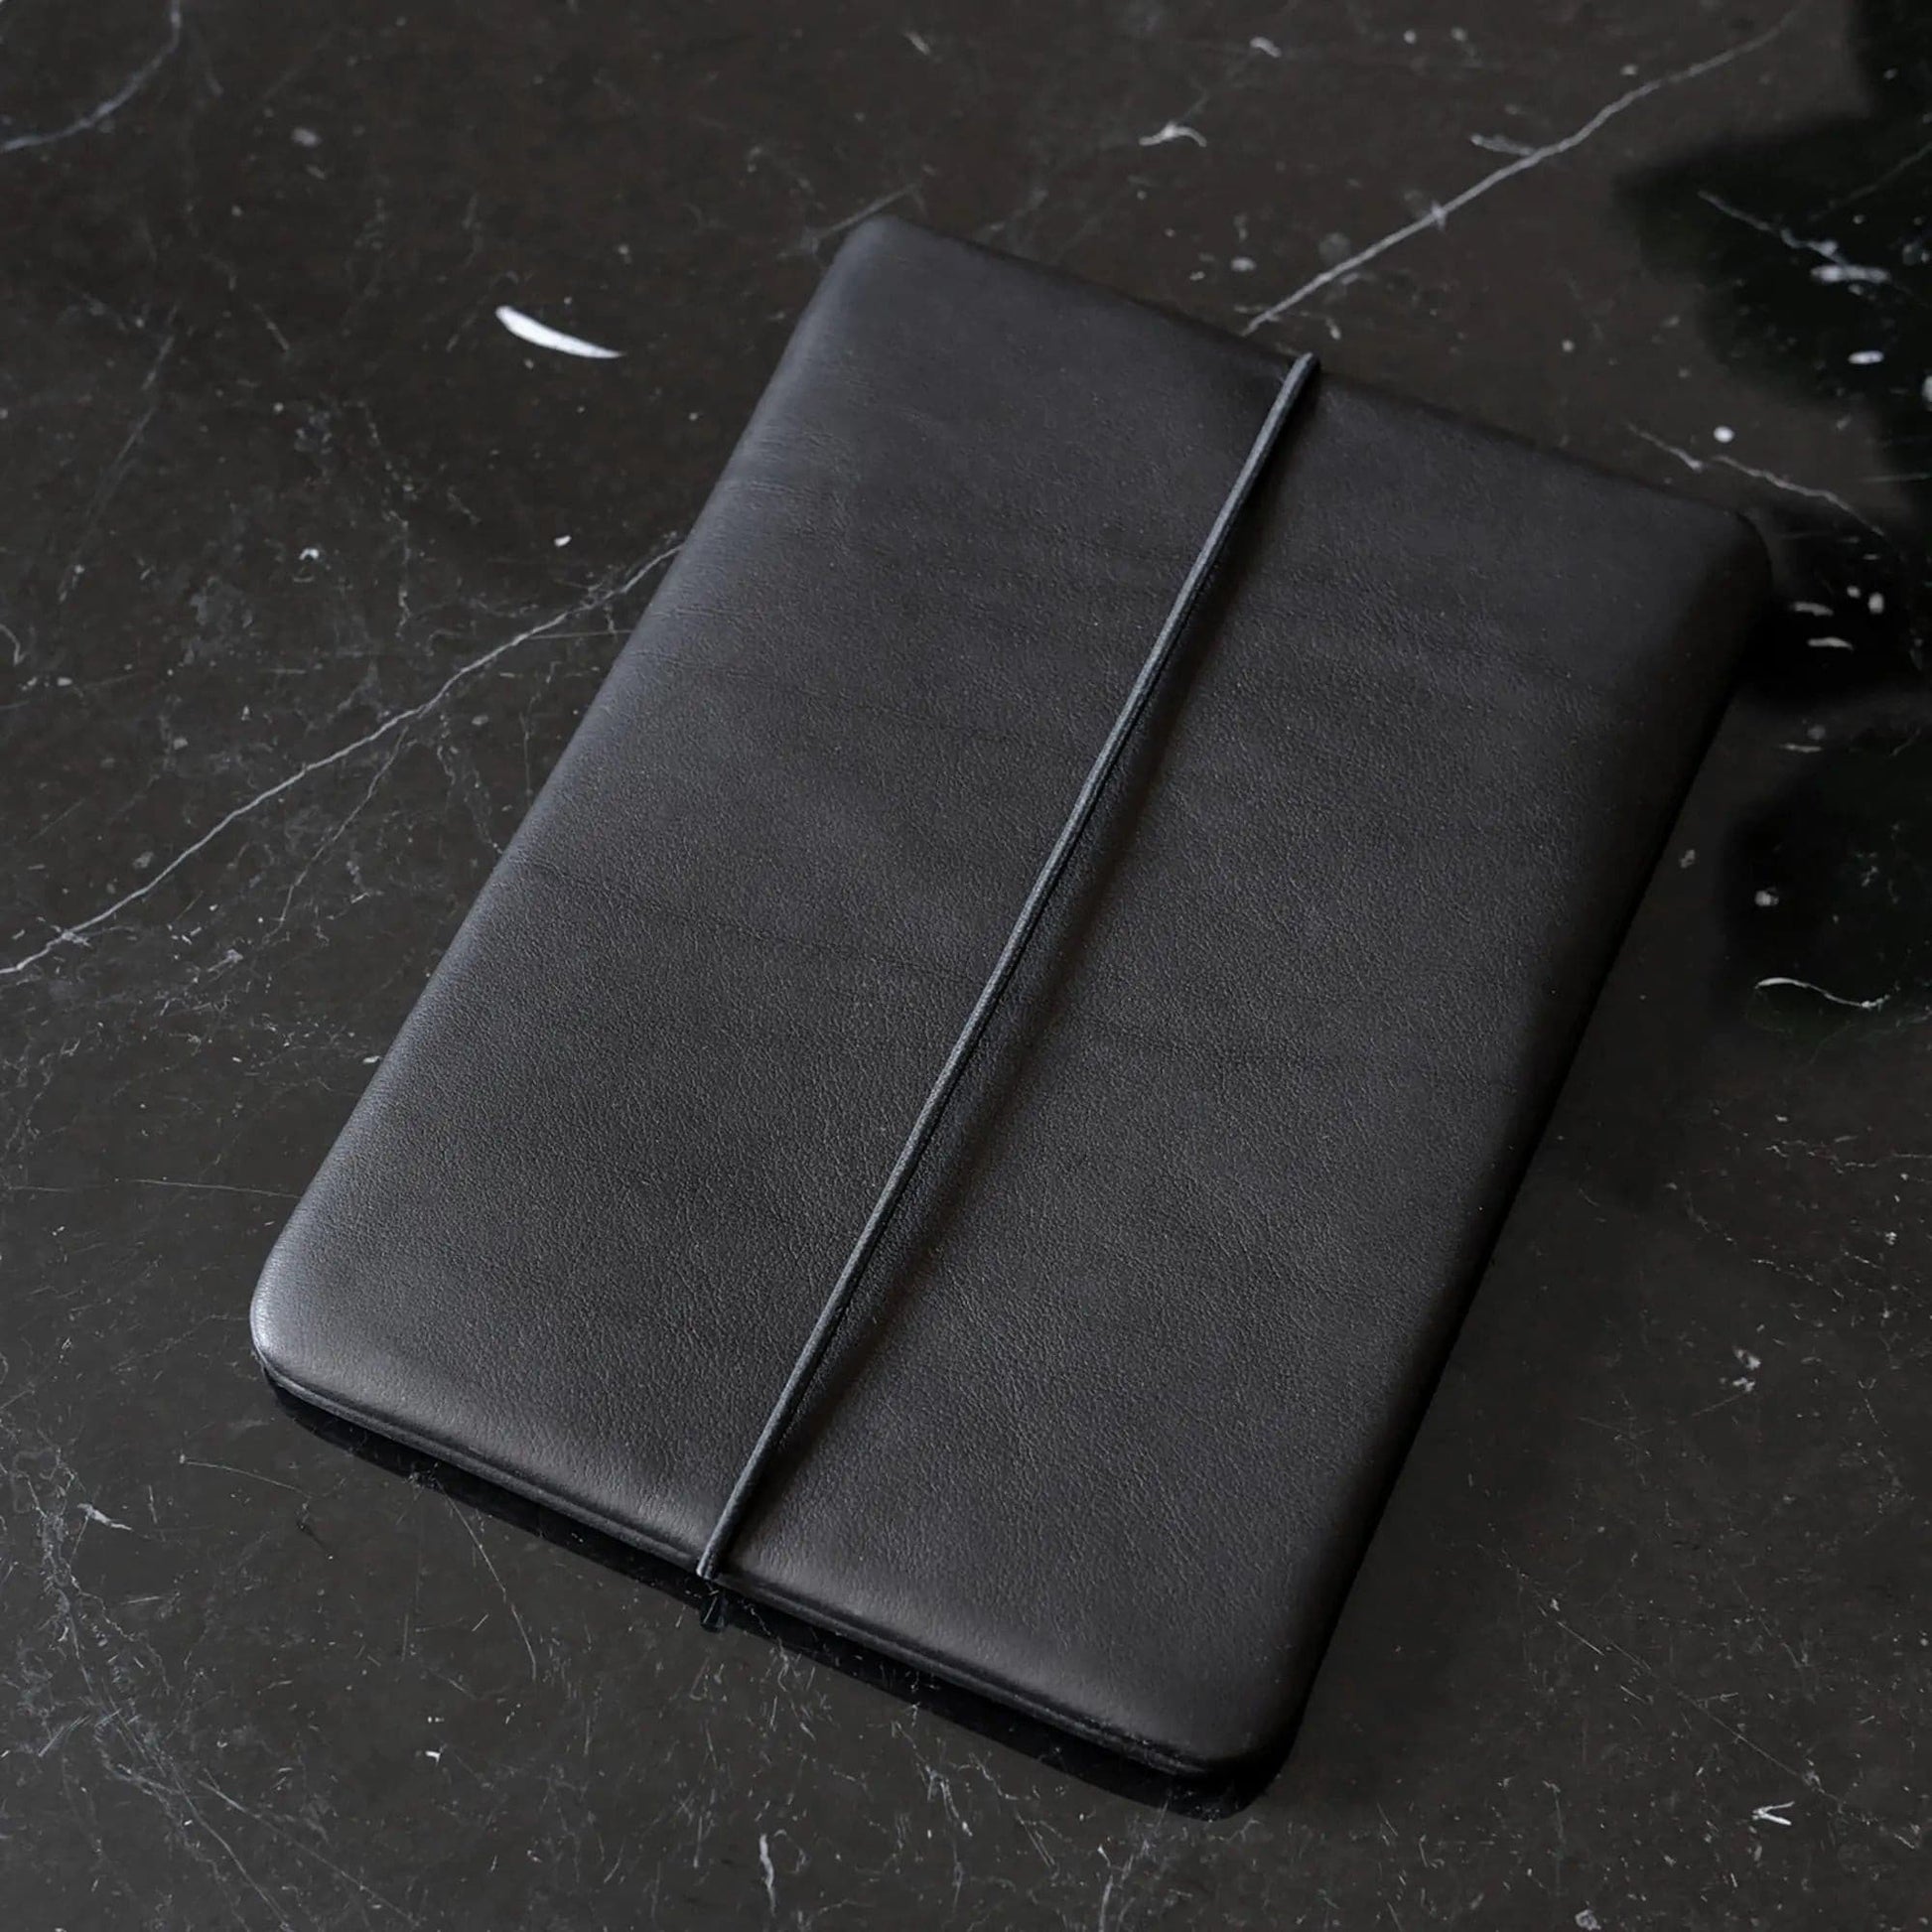 Macbookhülle aus schwarzem Leder liegt schräg auf einem schwarzem Marmortisch